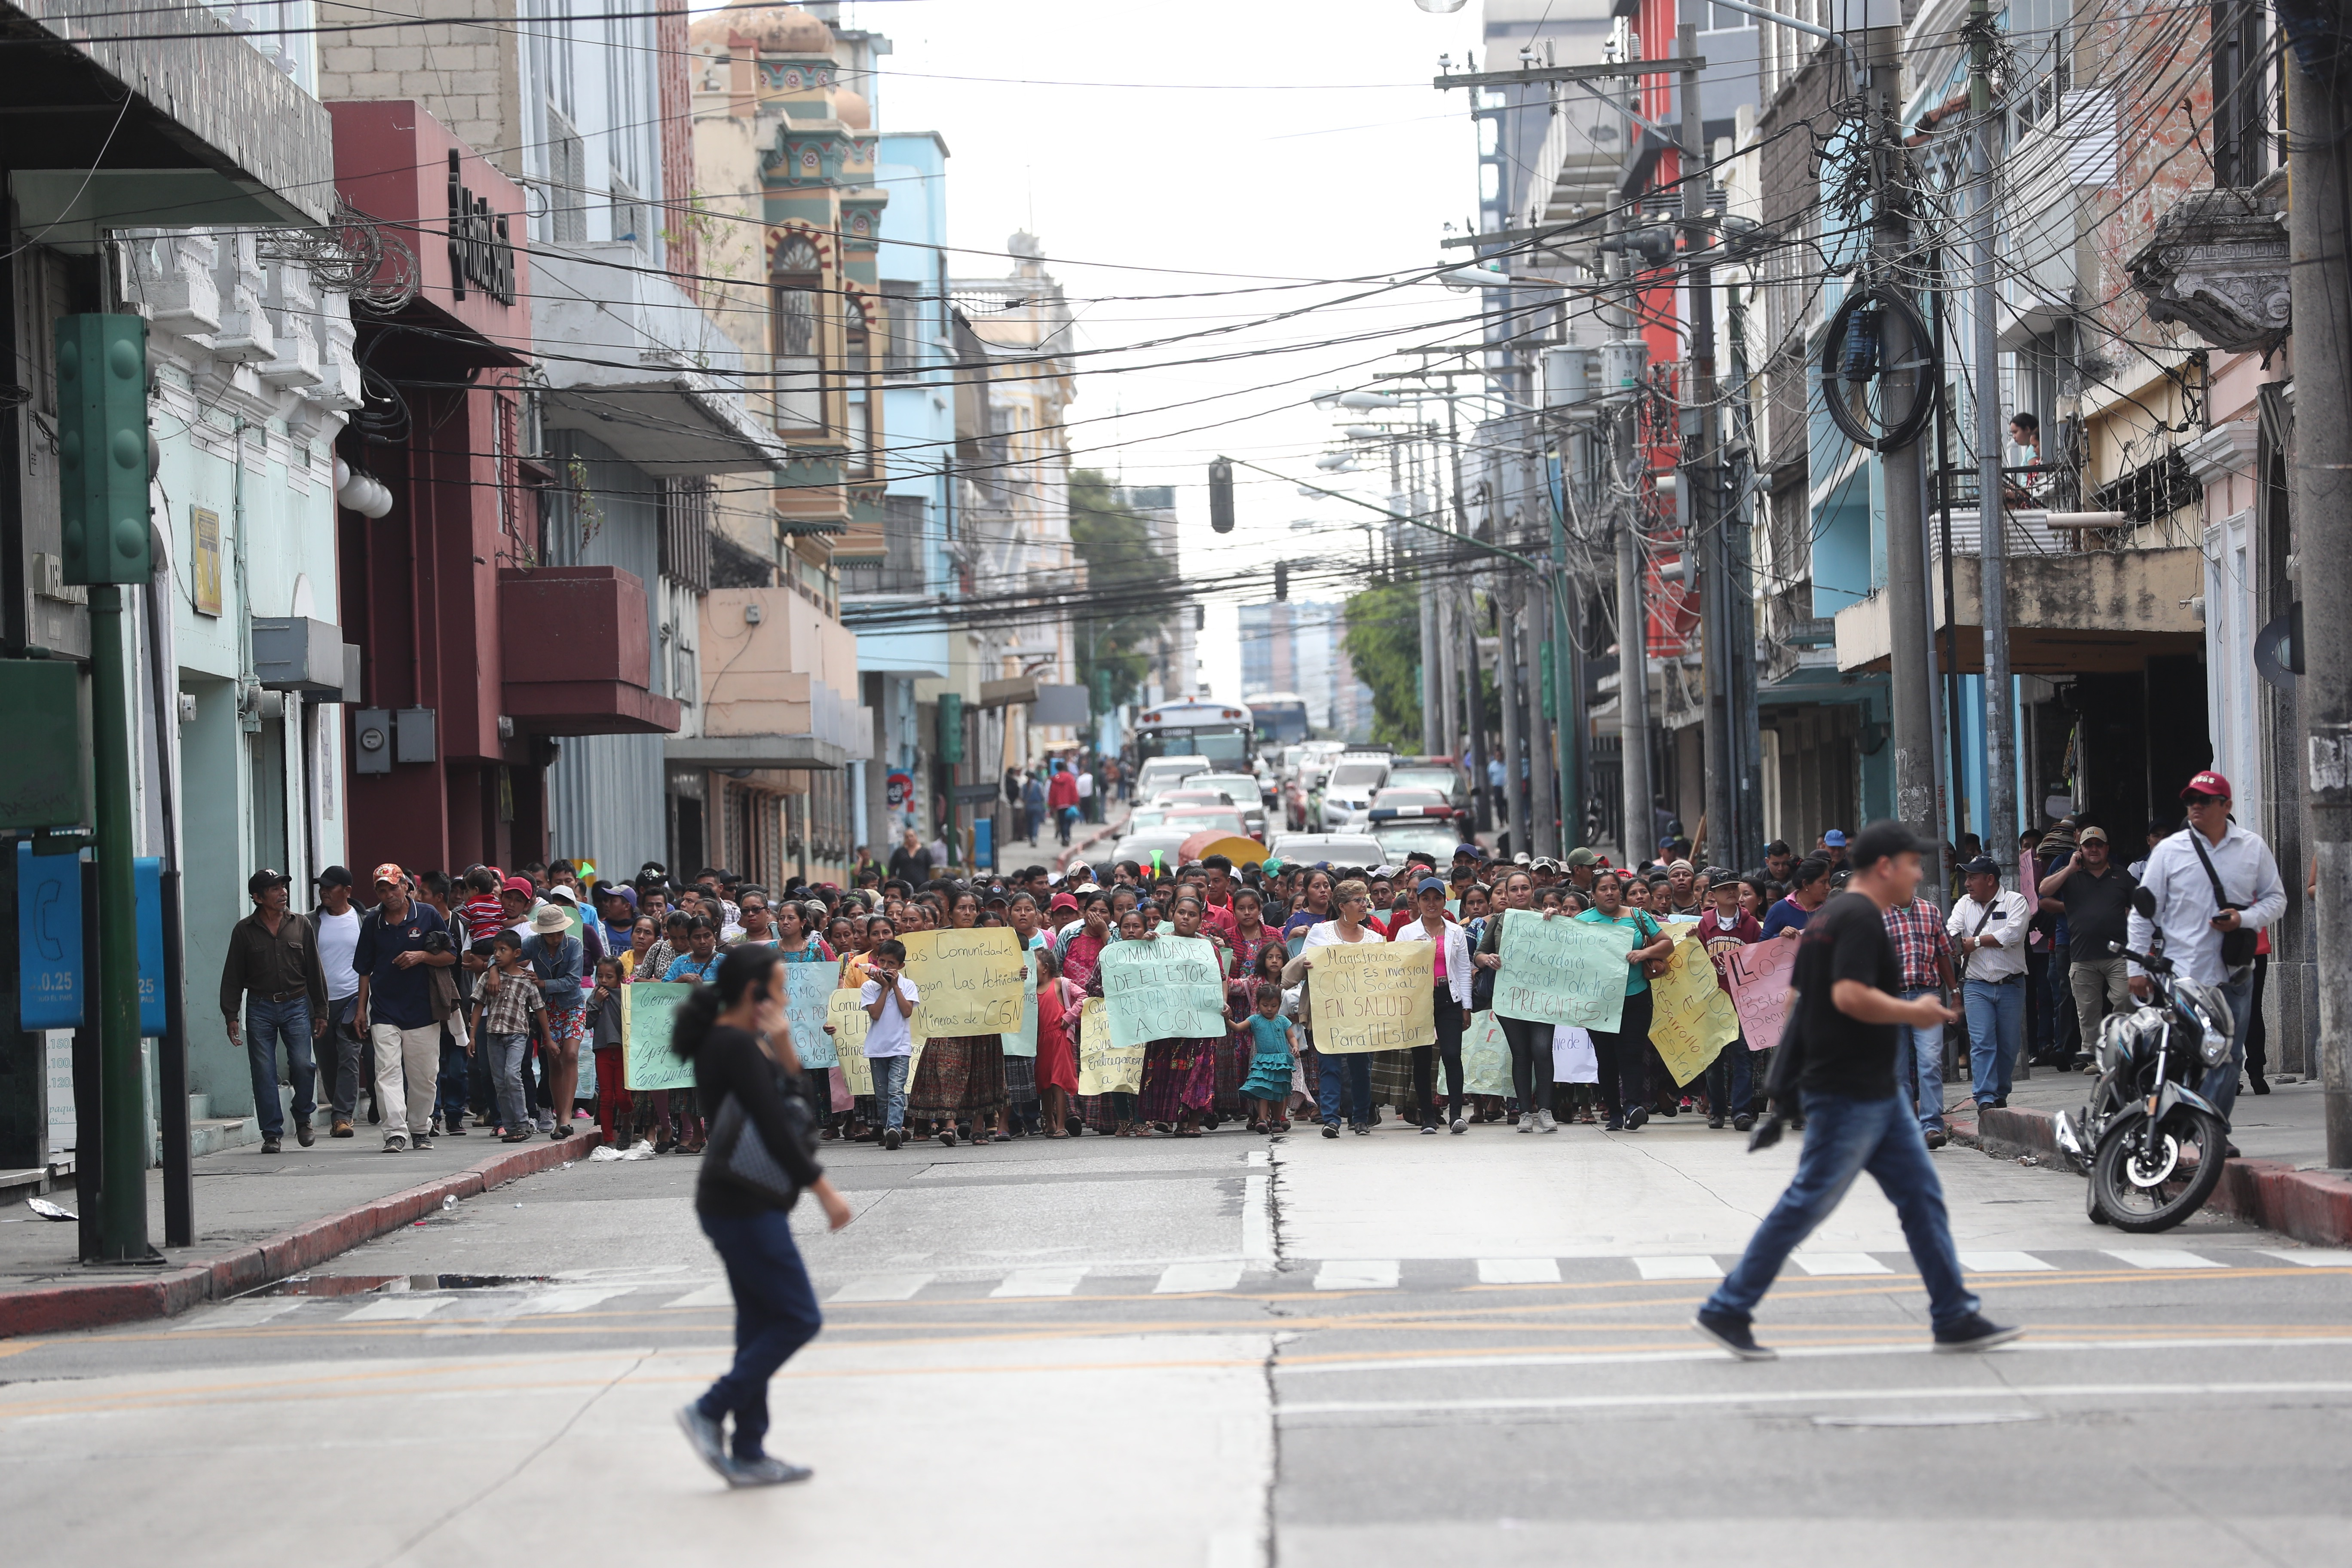 Varios sectores de la zona 1 capitalina se encuentran bloqueados, lo que impacta en el tráfico vehicular. (Foto Prensa Libre: Érick Ávila)


Fotografa Erick Avila:                    11/12/2019